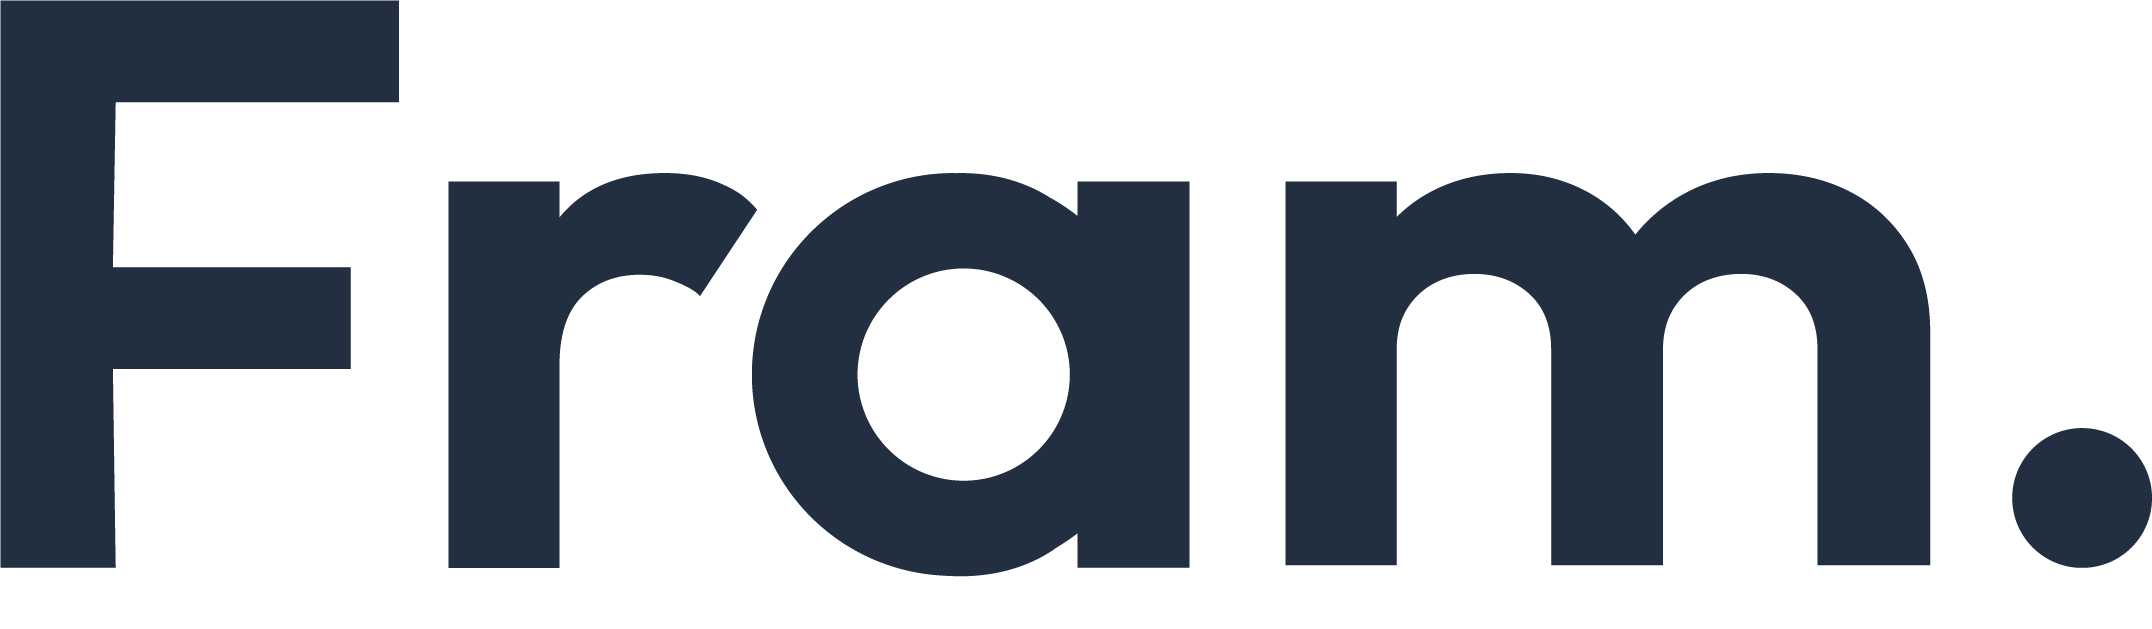 Fram advokatbyrås logotyp